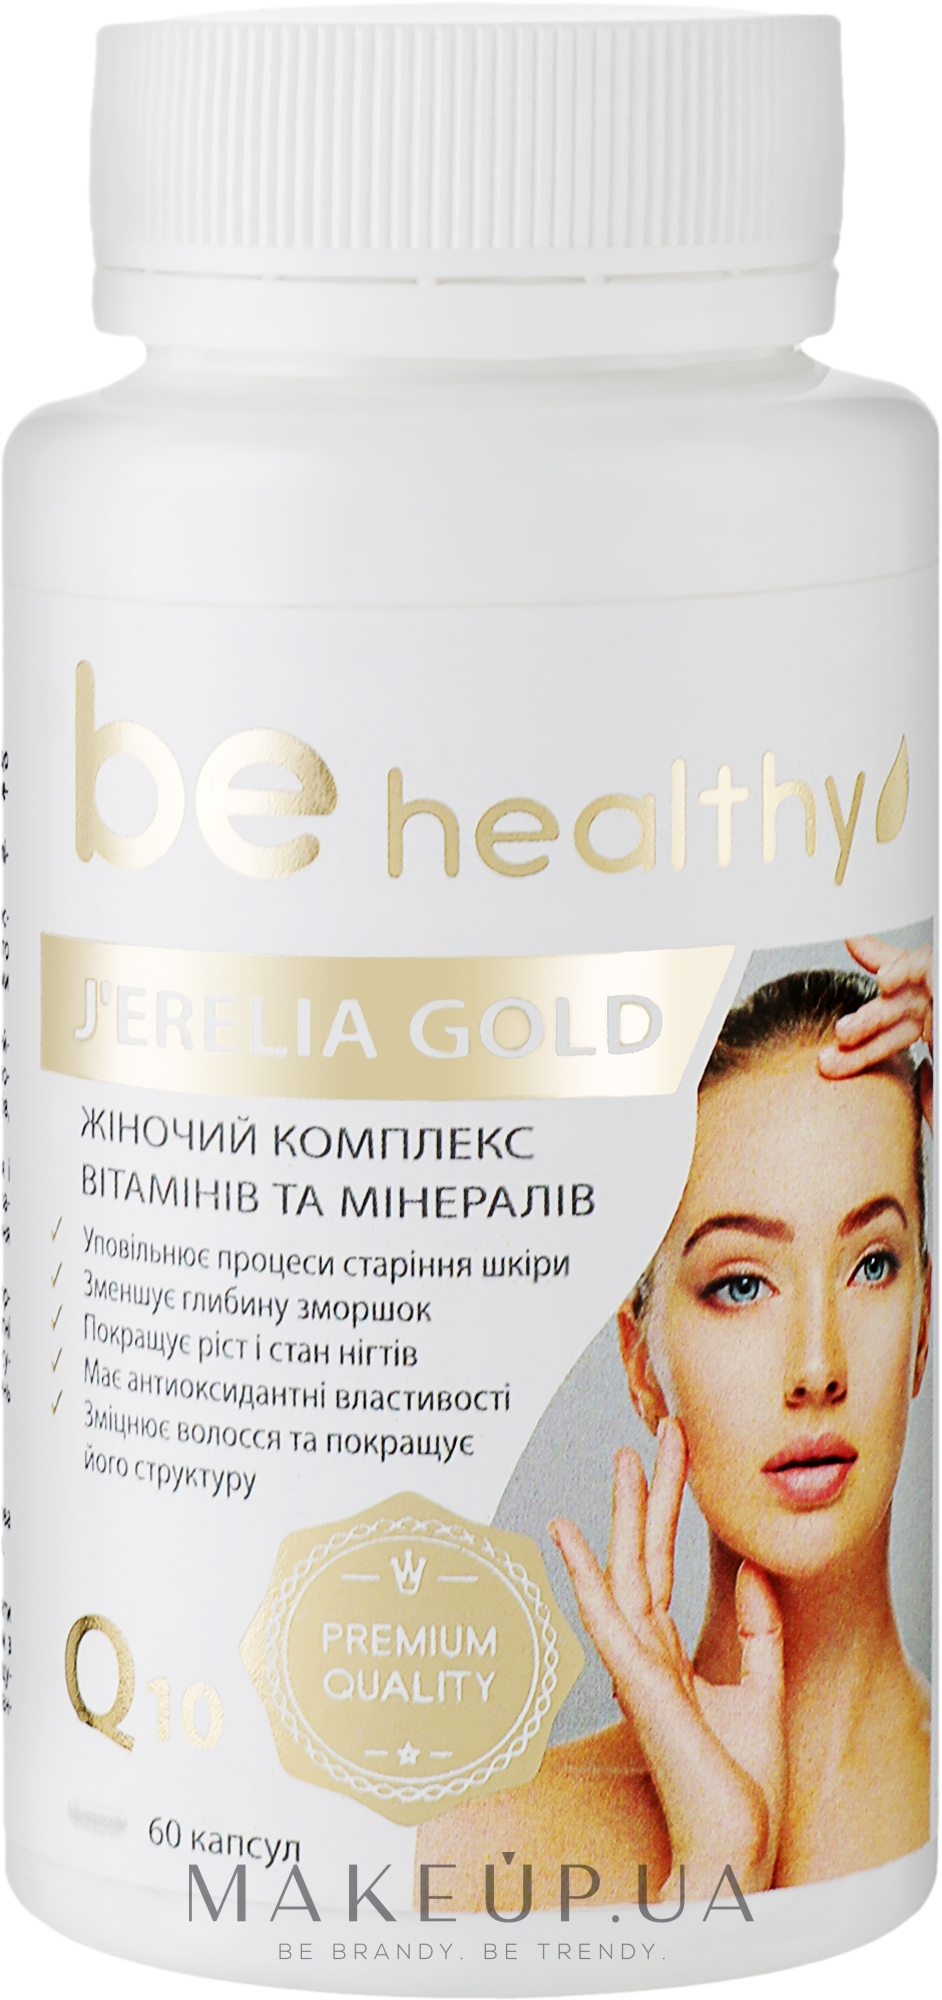 Женский комплекс витаминов и минералов - J'erelia Be Healthy Gold — фото 60шт